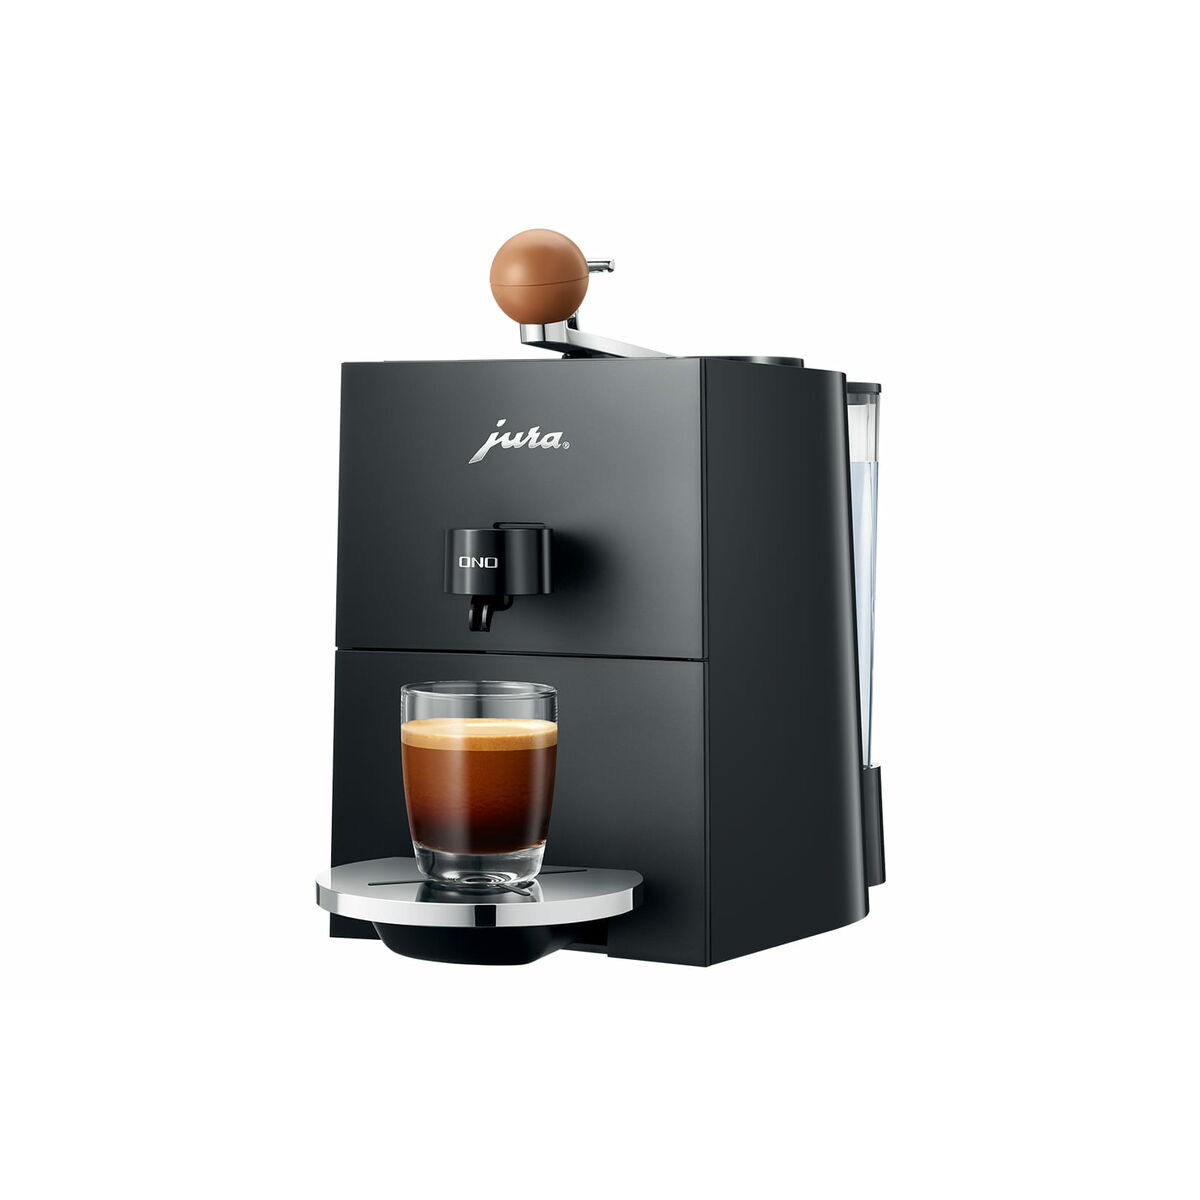 Superautomatische Kaffeemaschine Jura Schwarz 1450 W 15 bar - CA International 